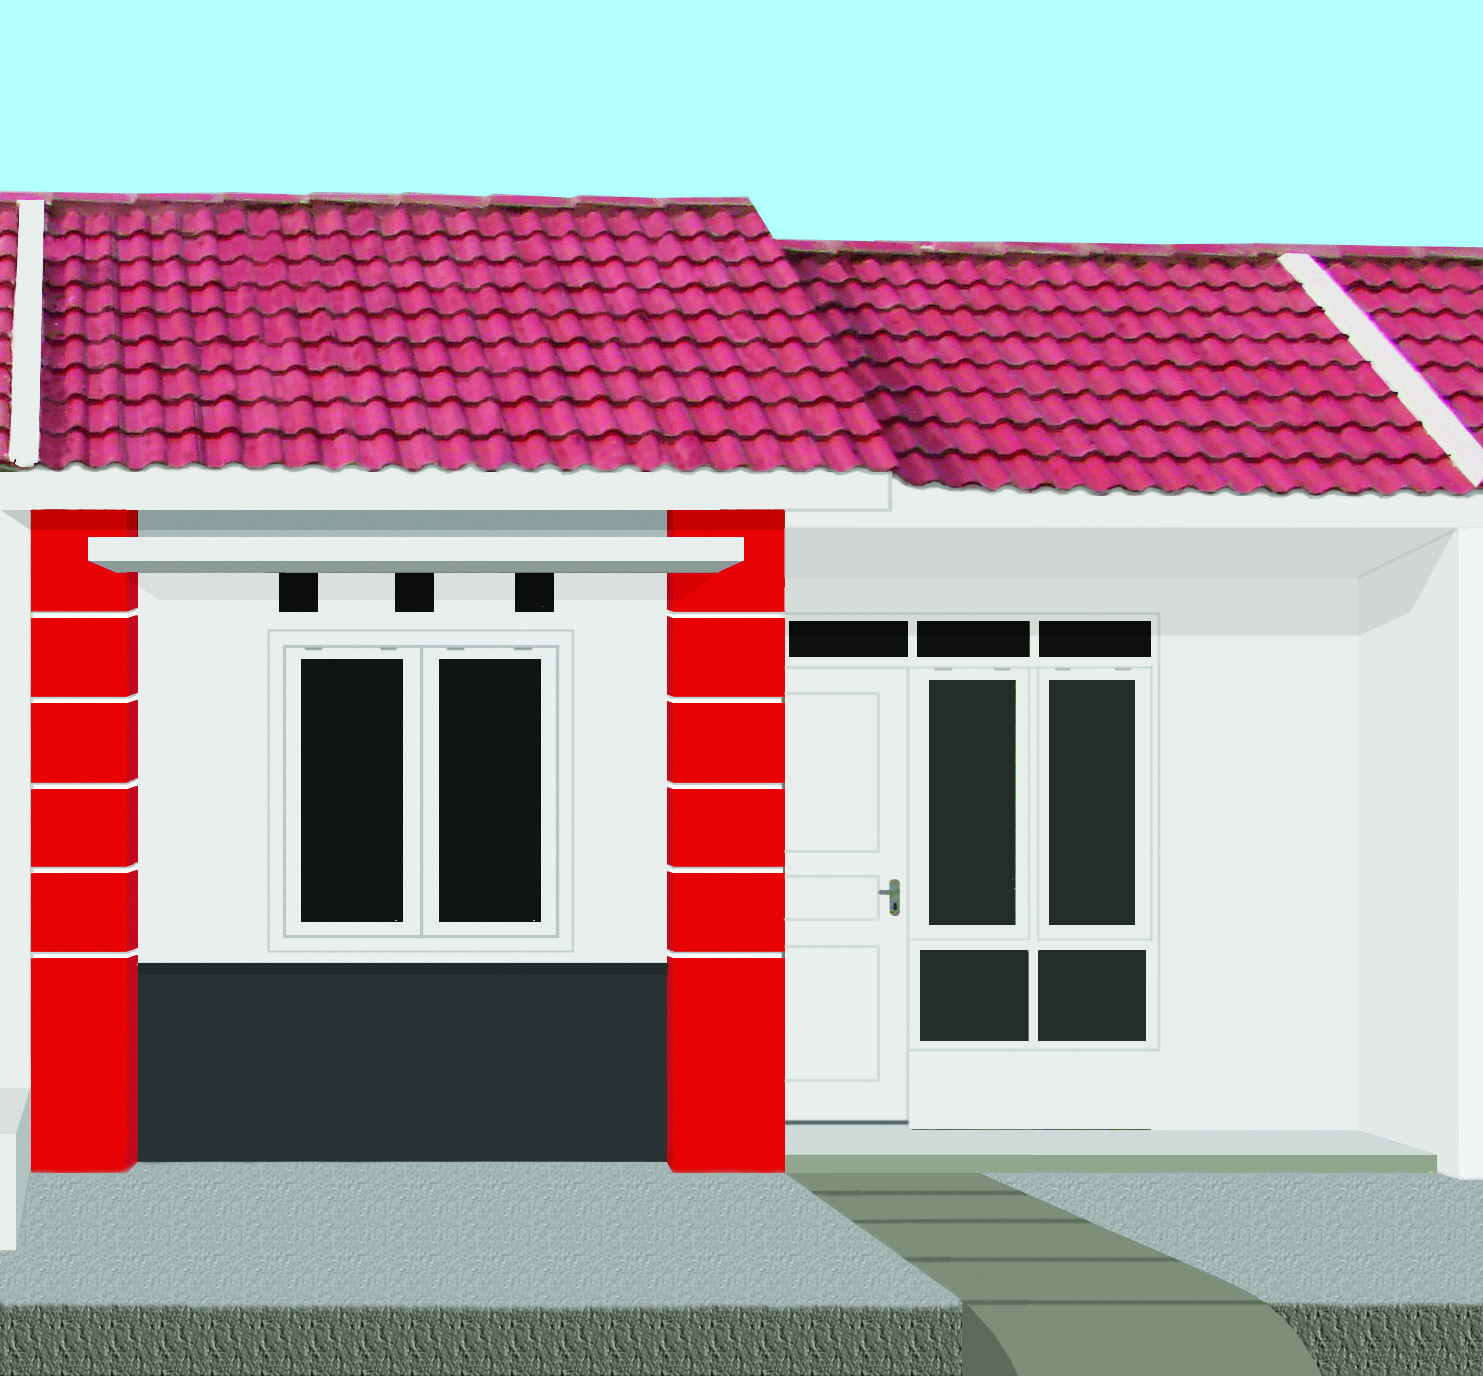 Panduan Bangunan Rumah Model Rumah Sederhana Minimalis